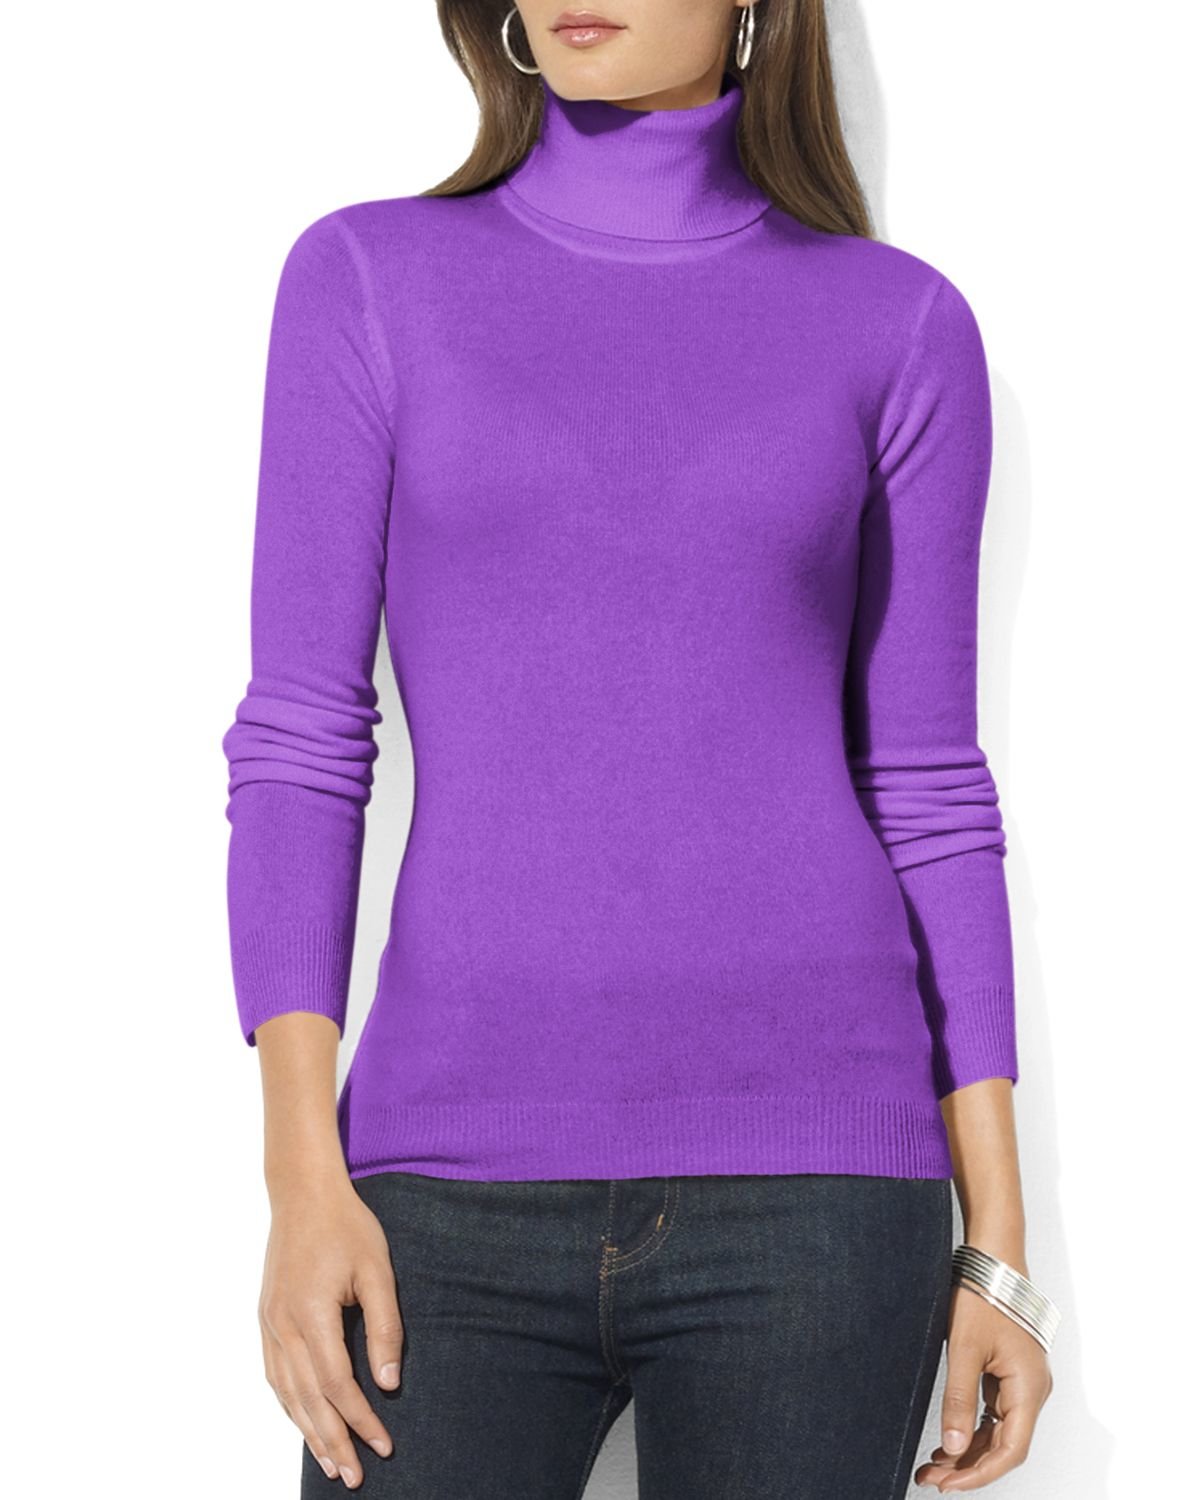 Lyst - Ralph lauren Lauren Zoe Silk-cotton Turtleneck Sweater in Purple